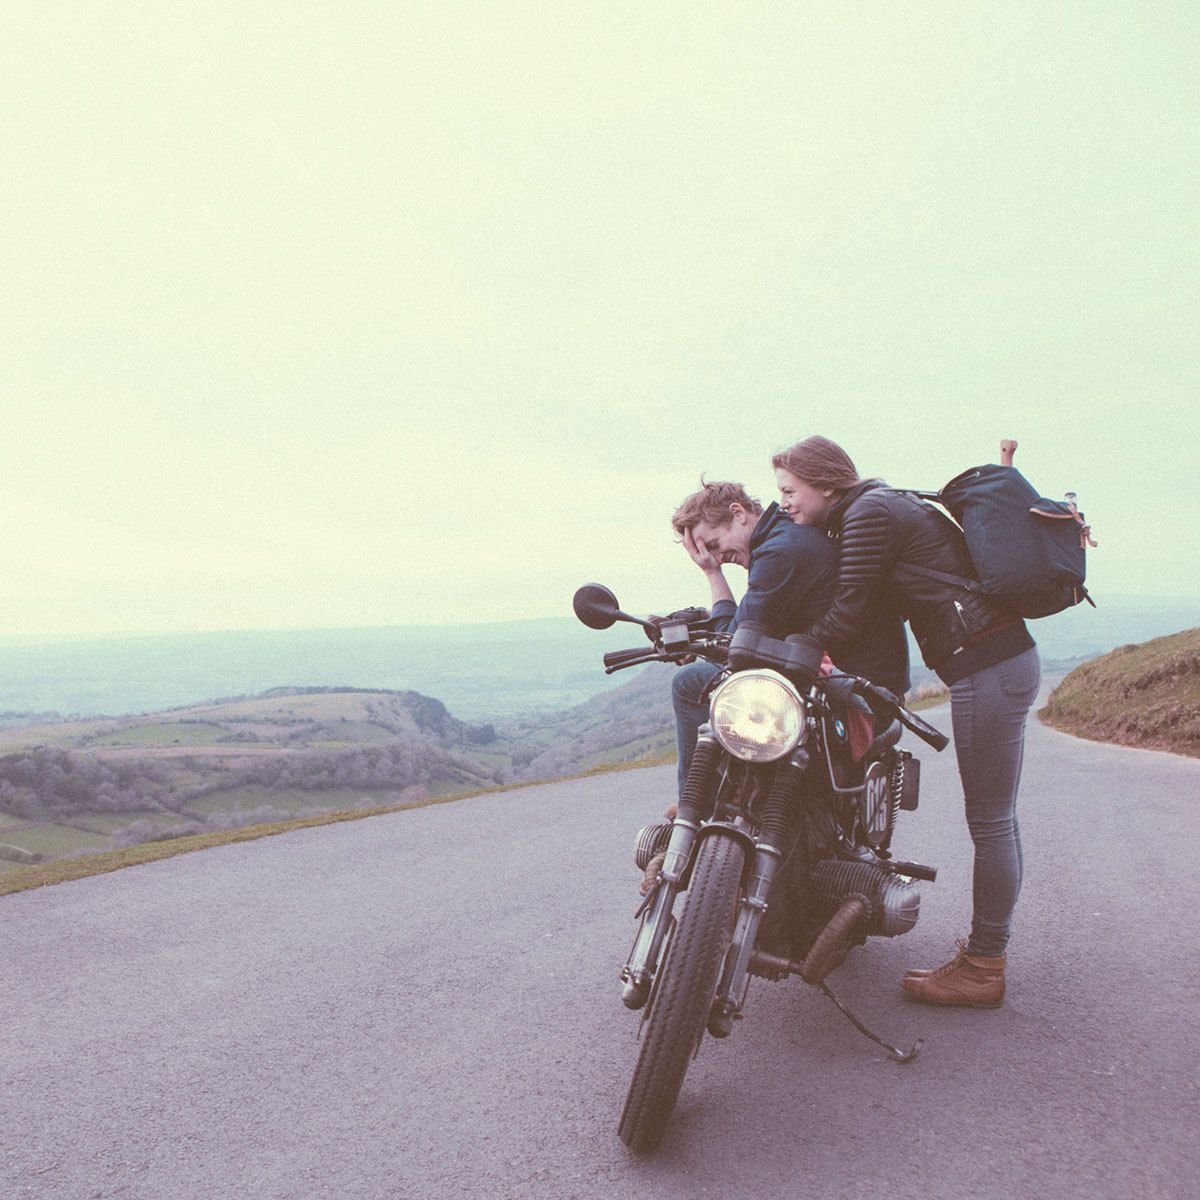 Парень и девушка на мотоцикле едут